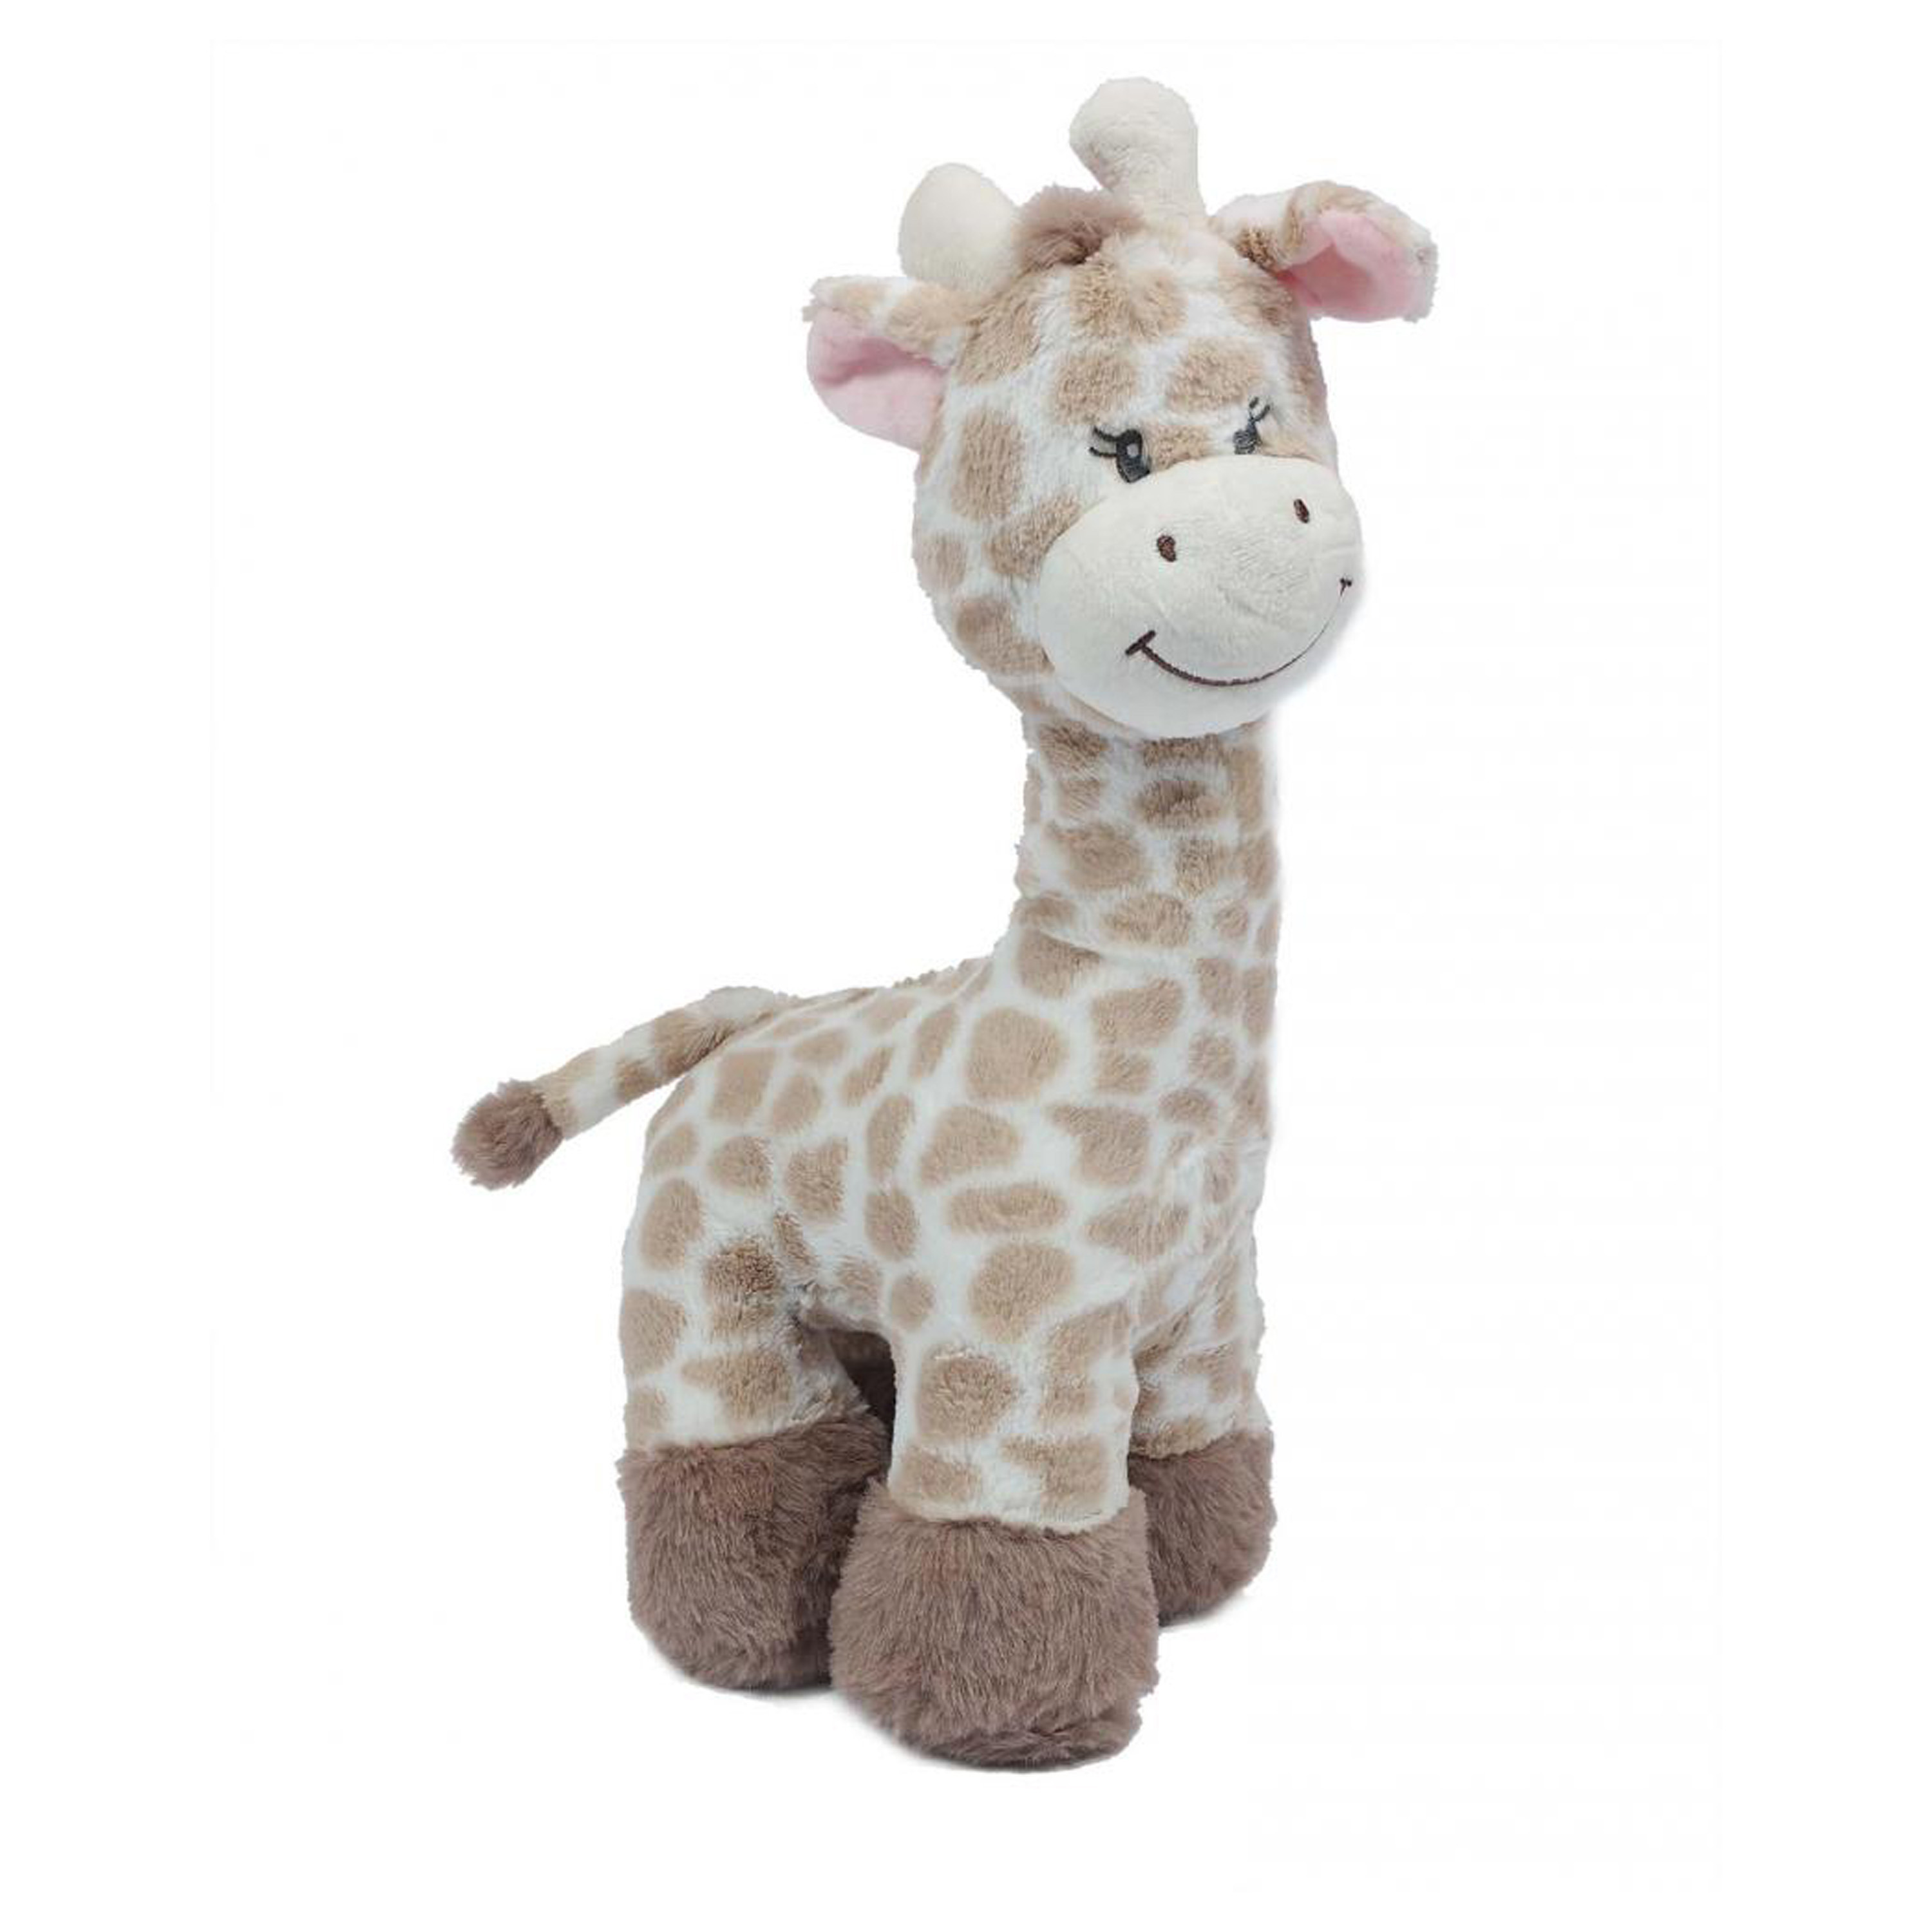 Knuffeldier Giraffe zachte pluche stof lichtbruin kwaliteit knuffels 36 cm liggend